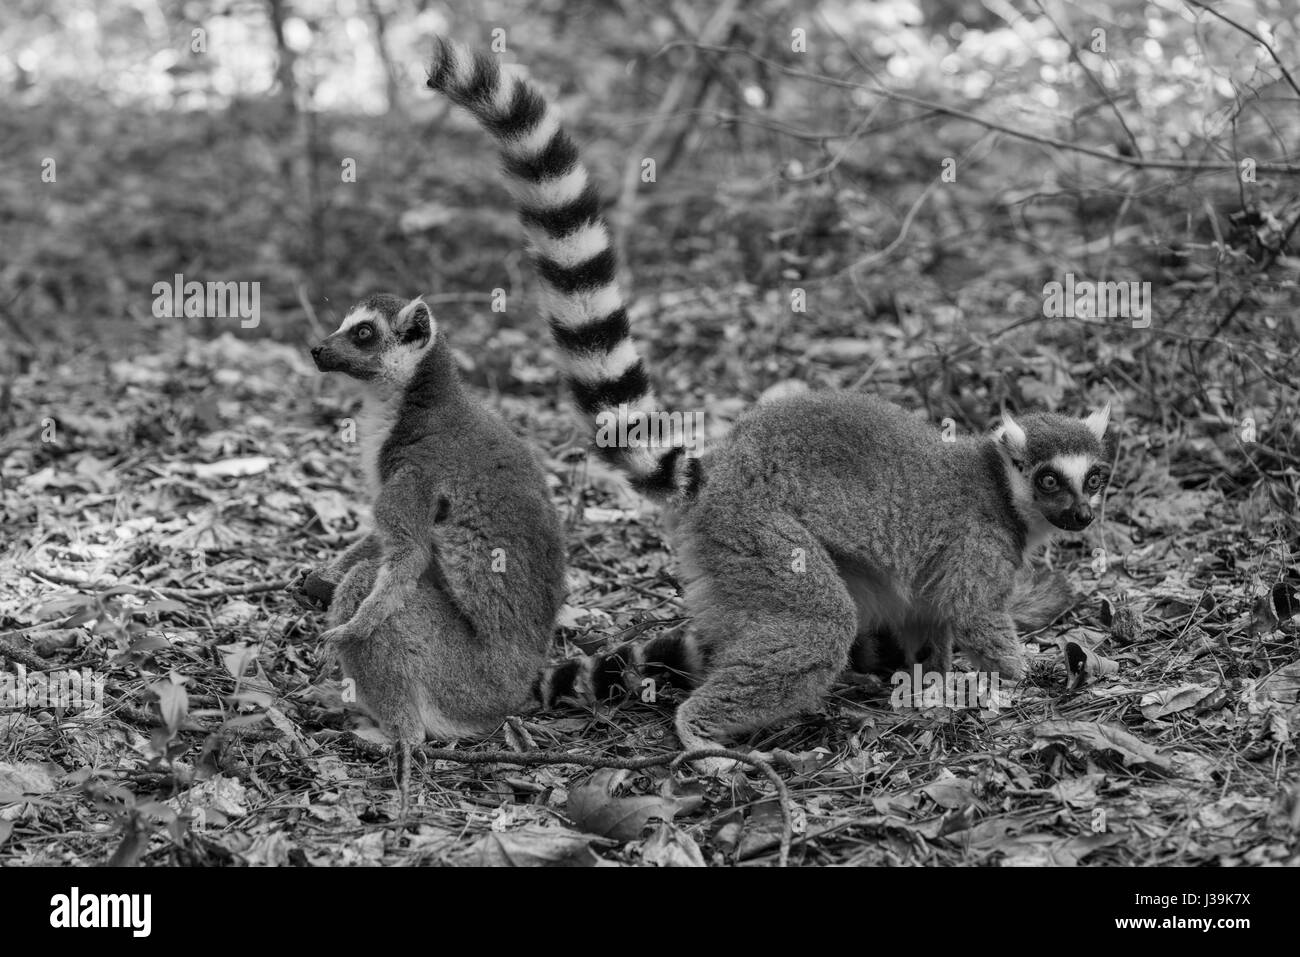 Ring-tailed lemur (Scientific name: Lemur catta) Stock Photo